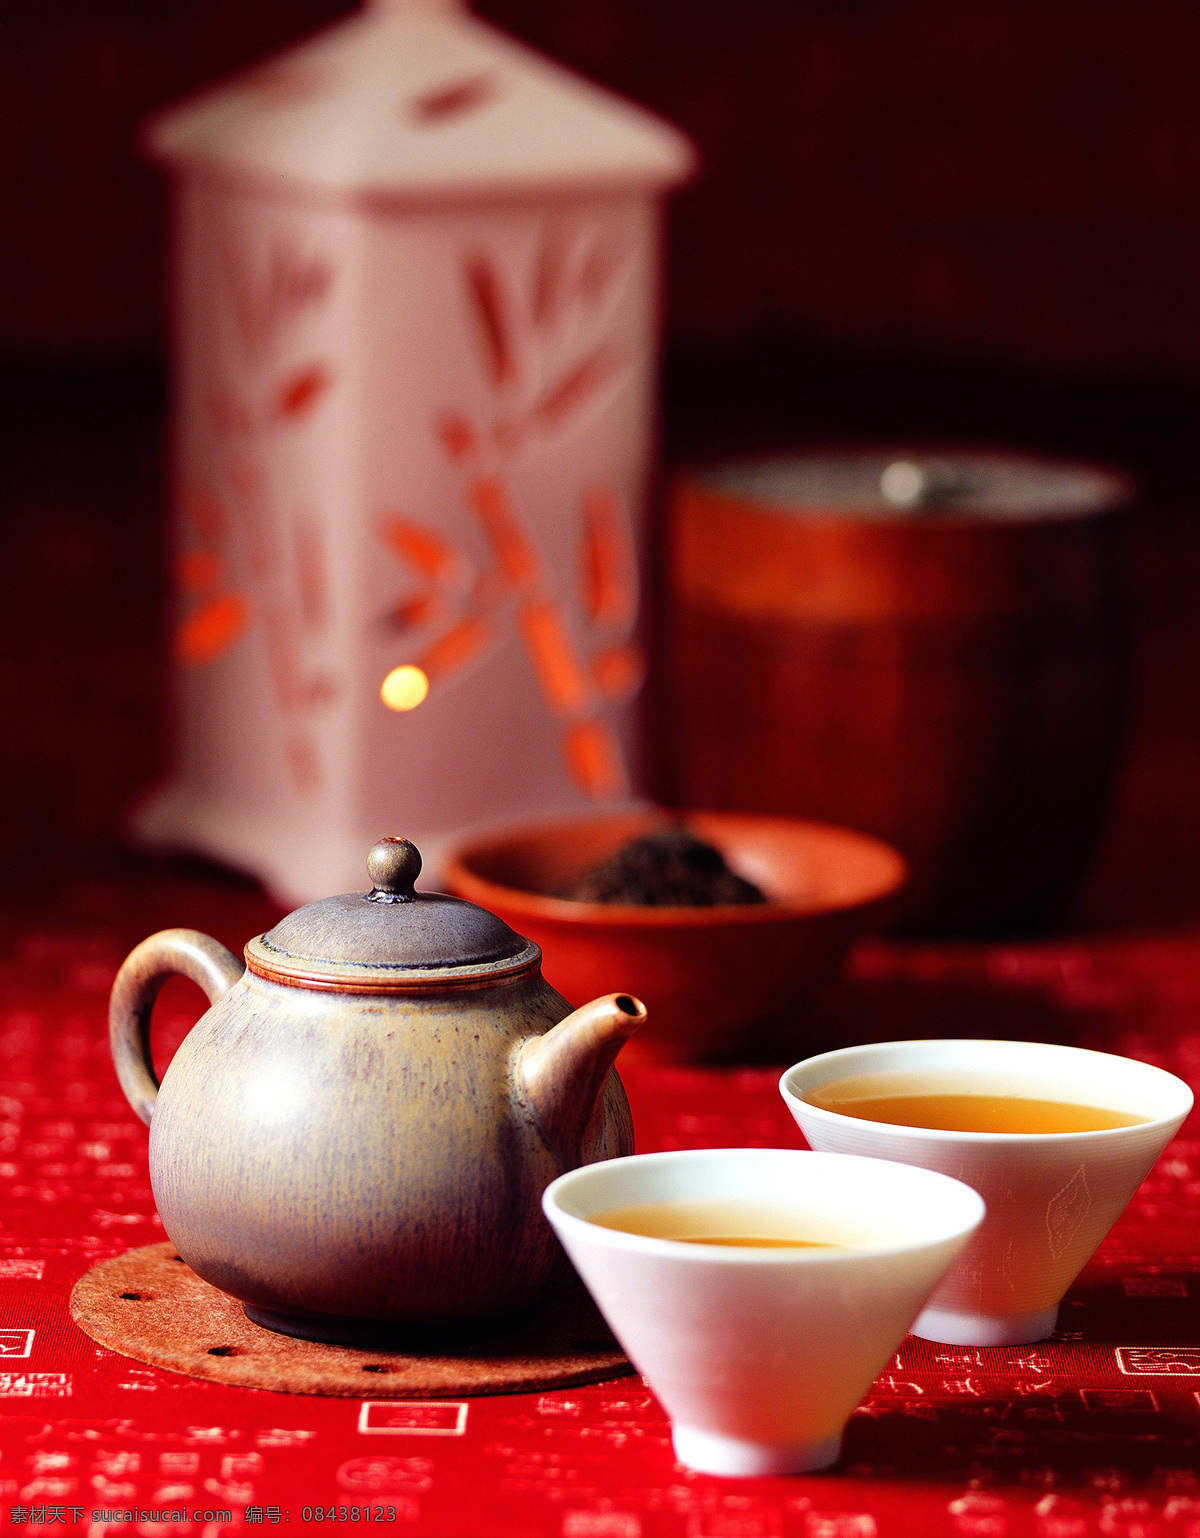 饮茶文化高清 茶道 茶艺 茶具 饮茶 文化 传统 中国 高清 餐饮美食 饮料酒水